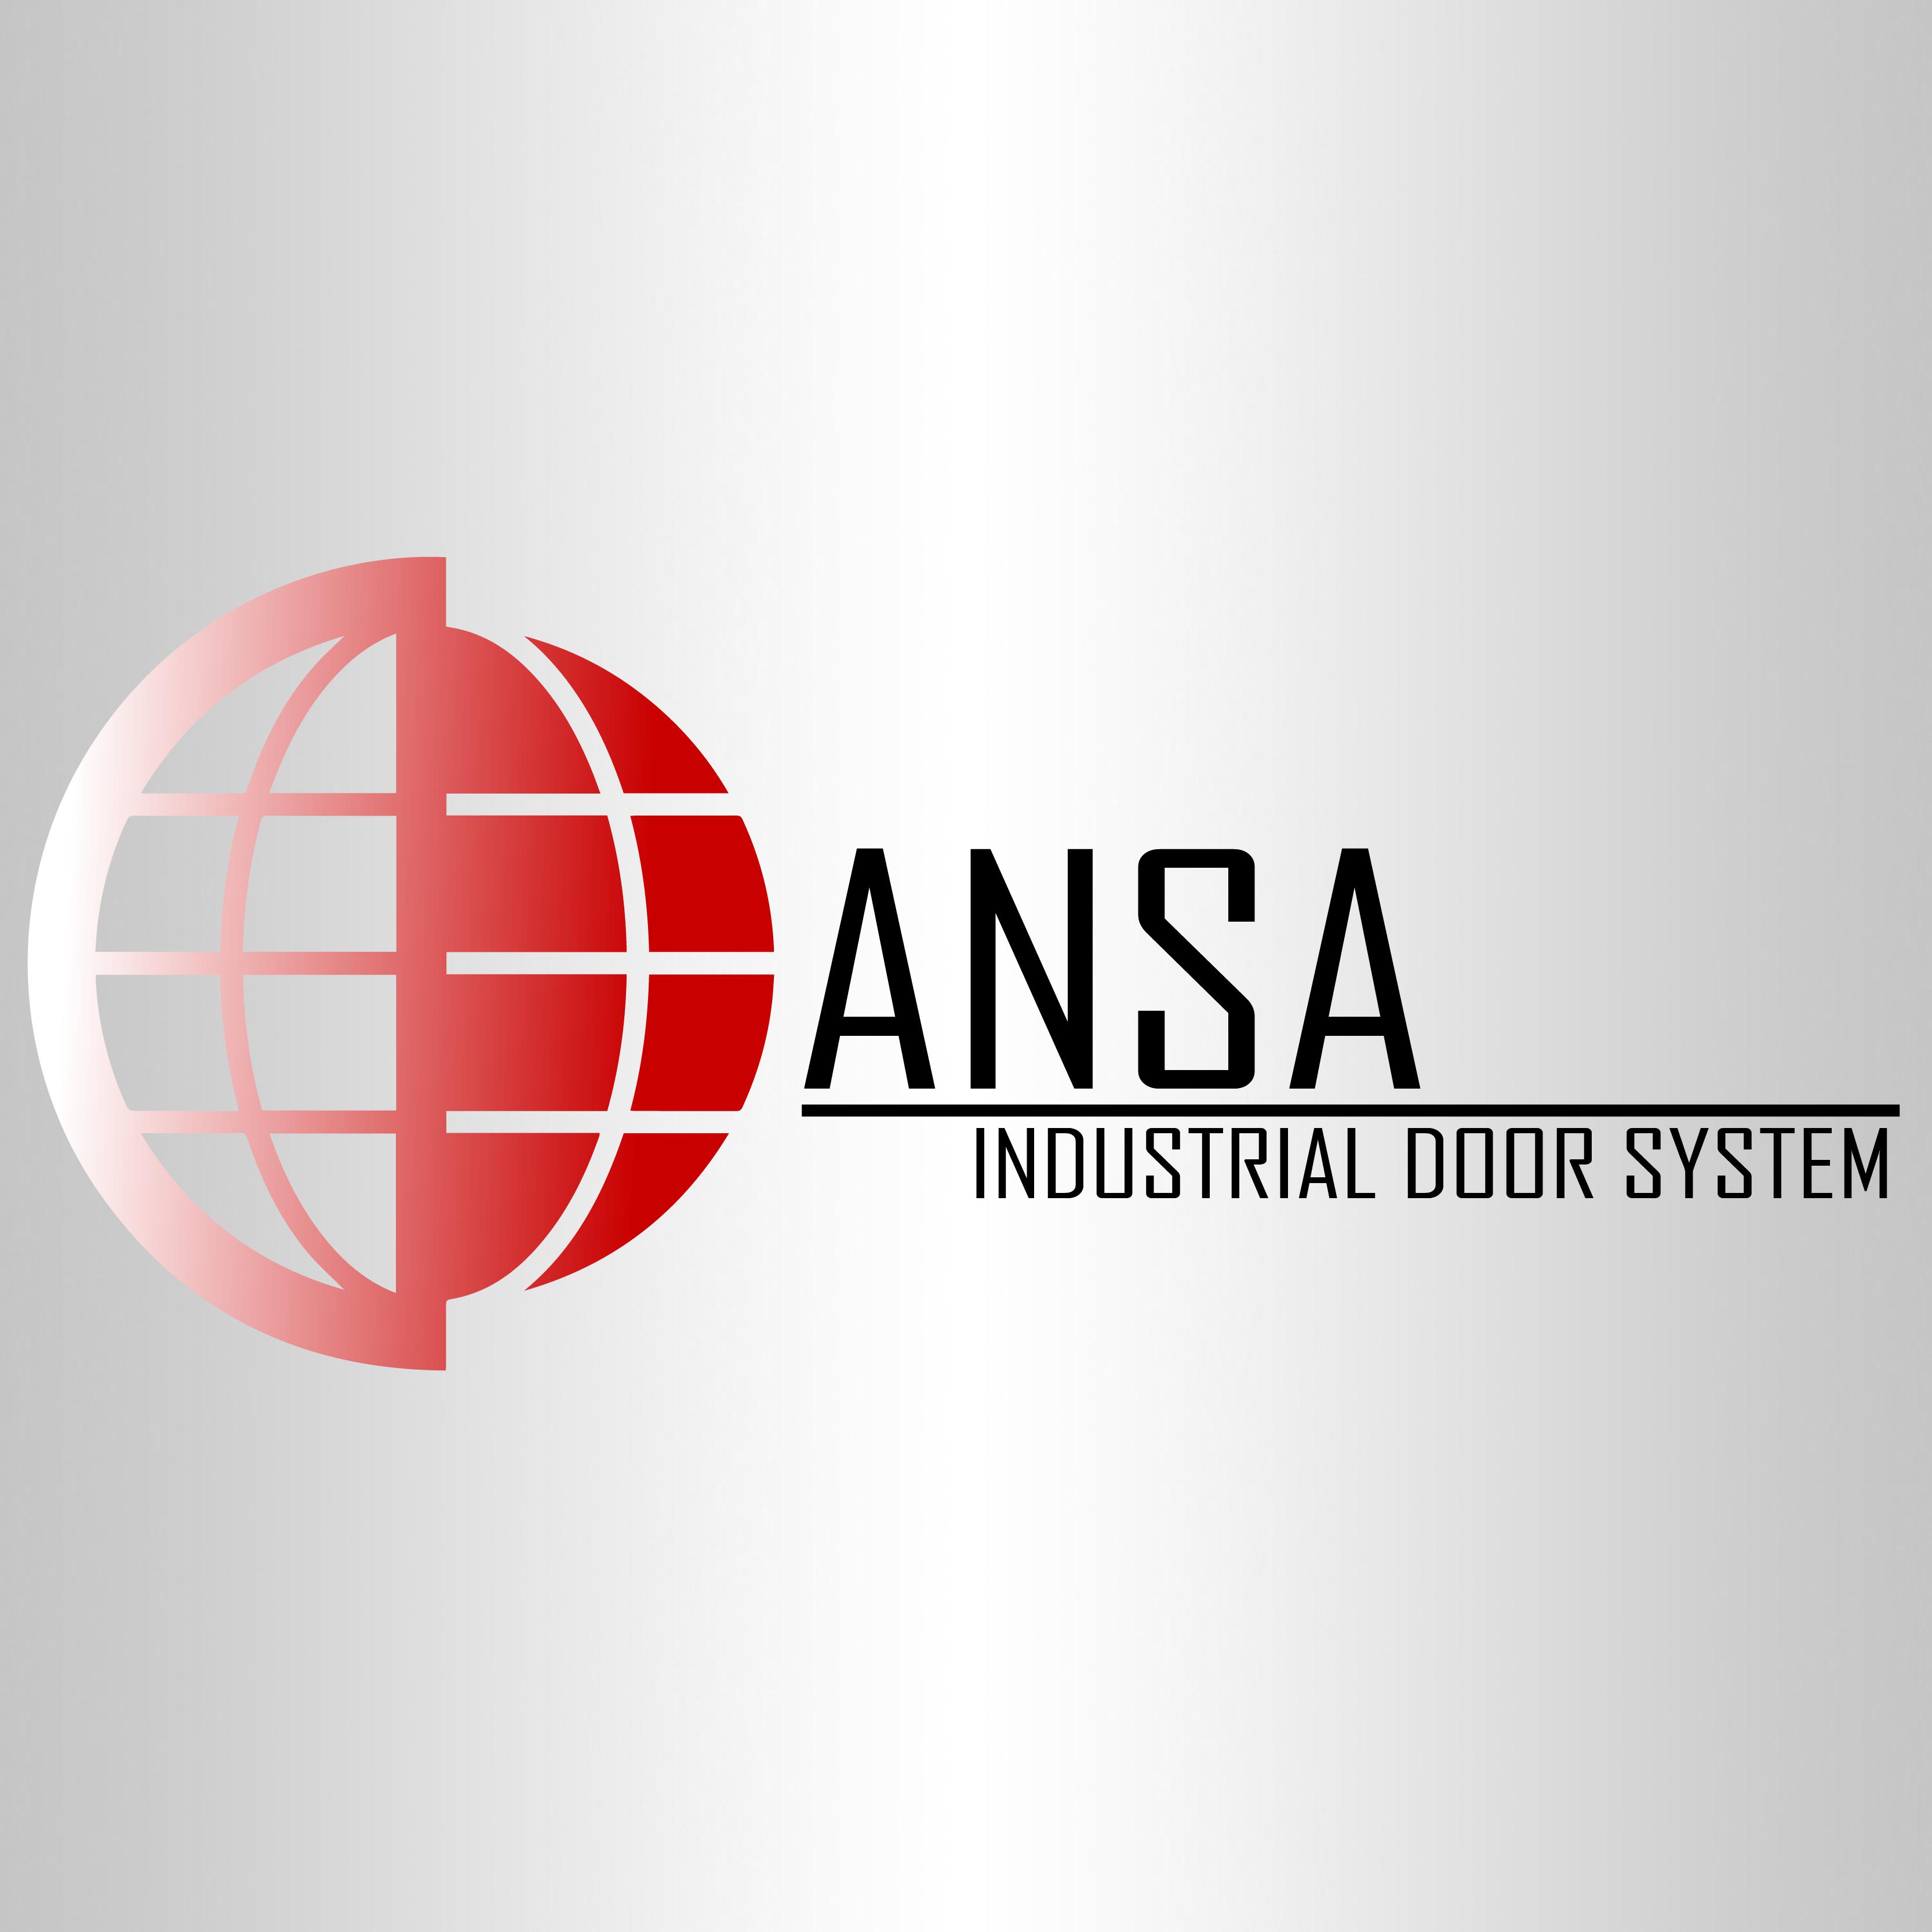 Portones ANSA Logo